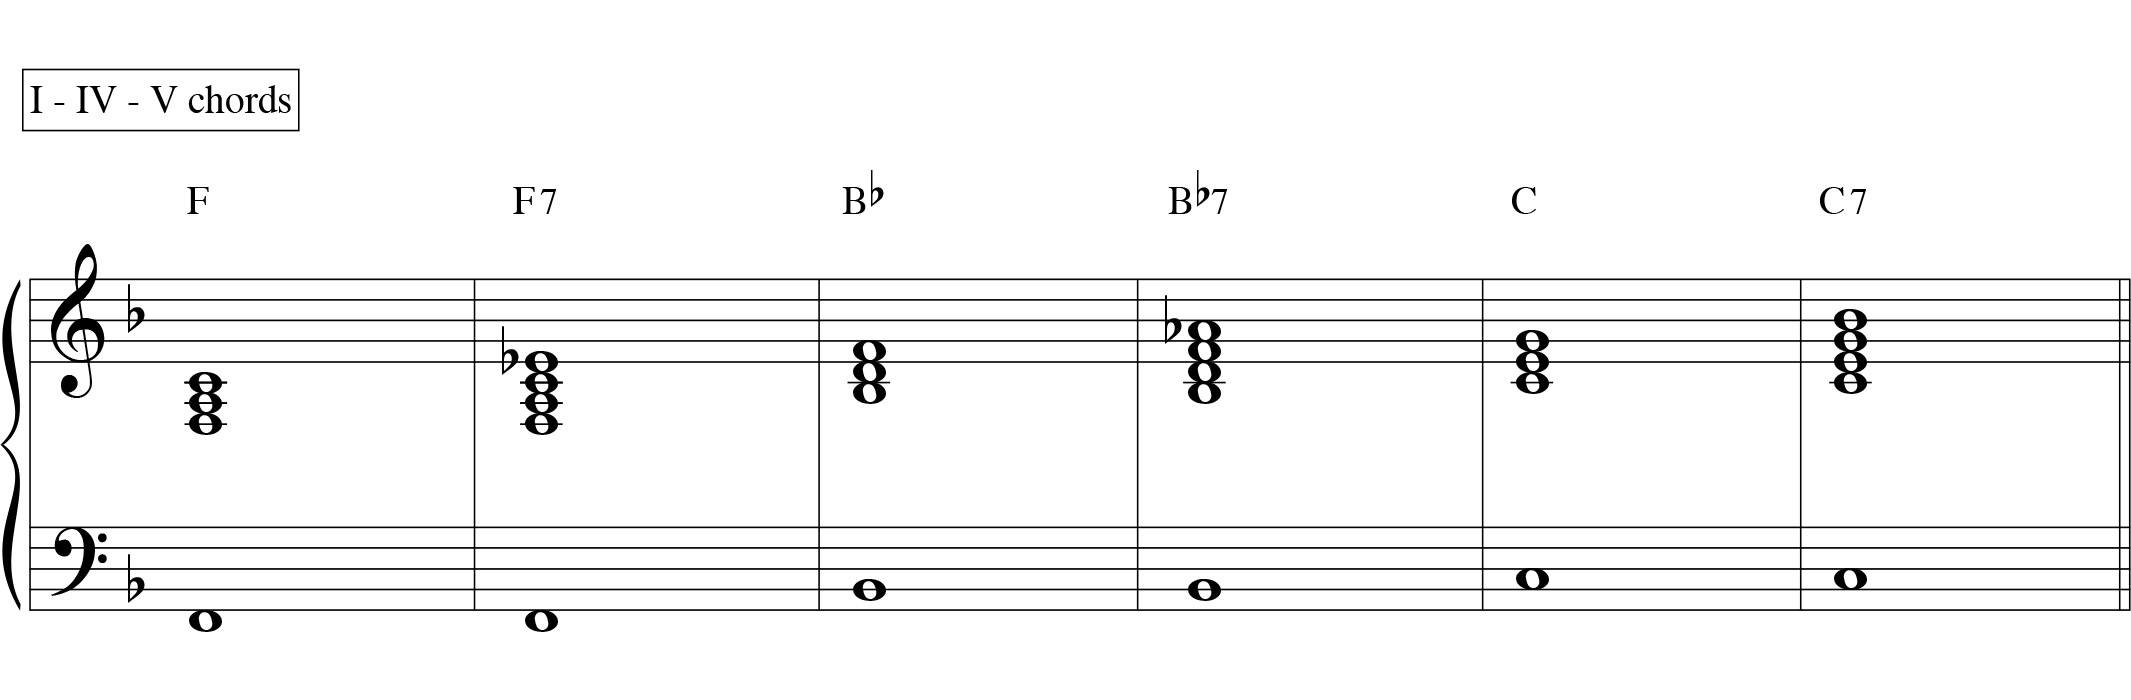 12 bar blues basic chords